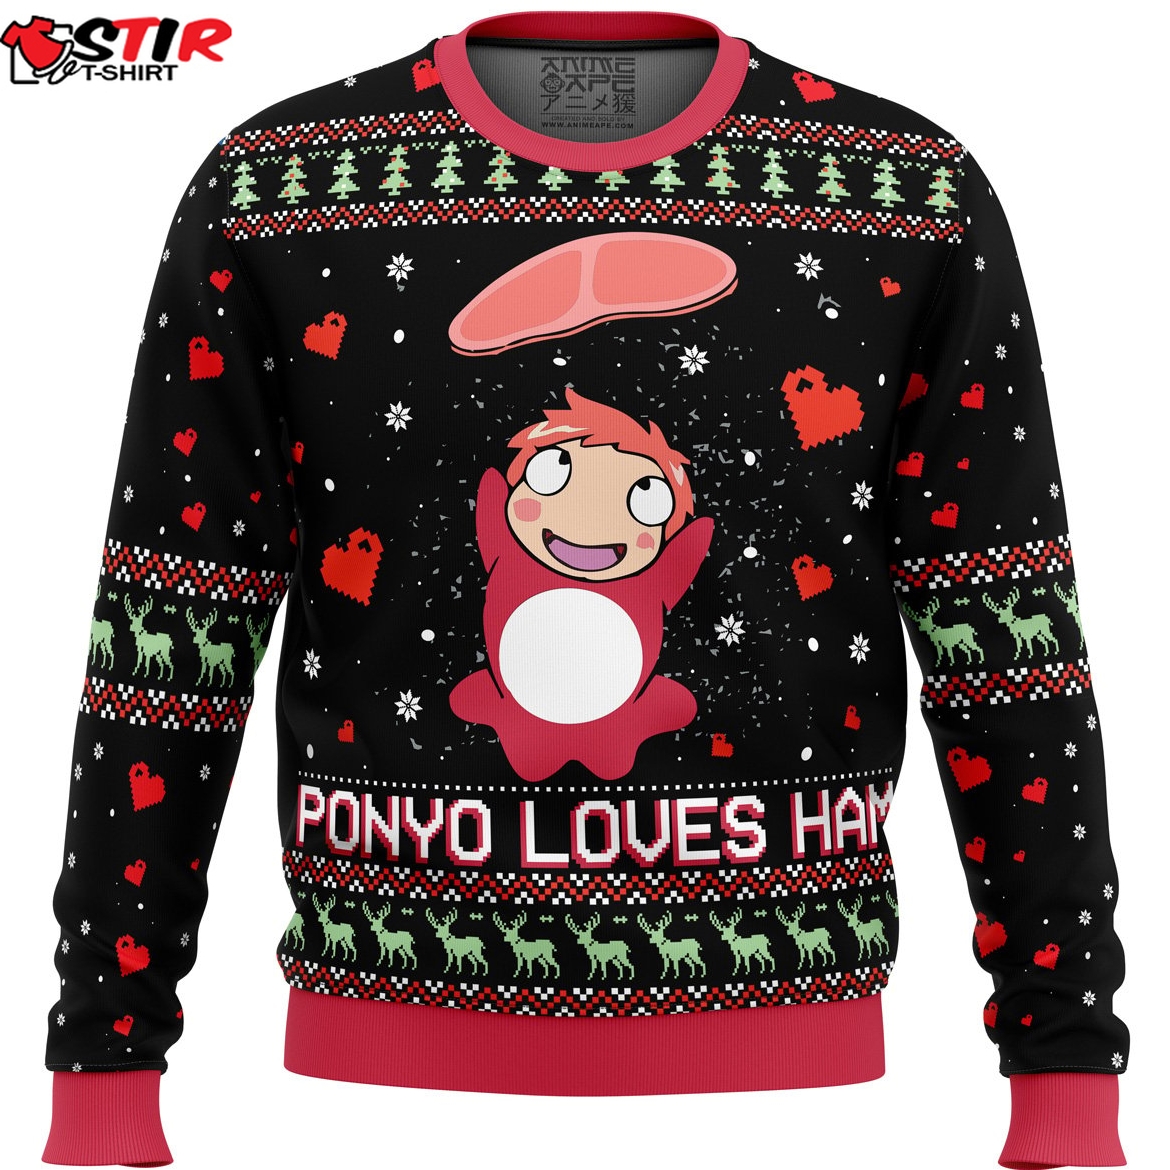 Studio Ghibli Ponyo Loves Ham Miyazaki Ugly Christmas Sweater Stirtshirt